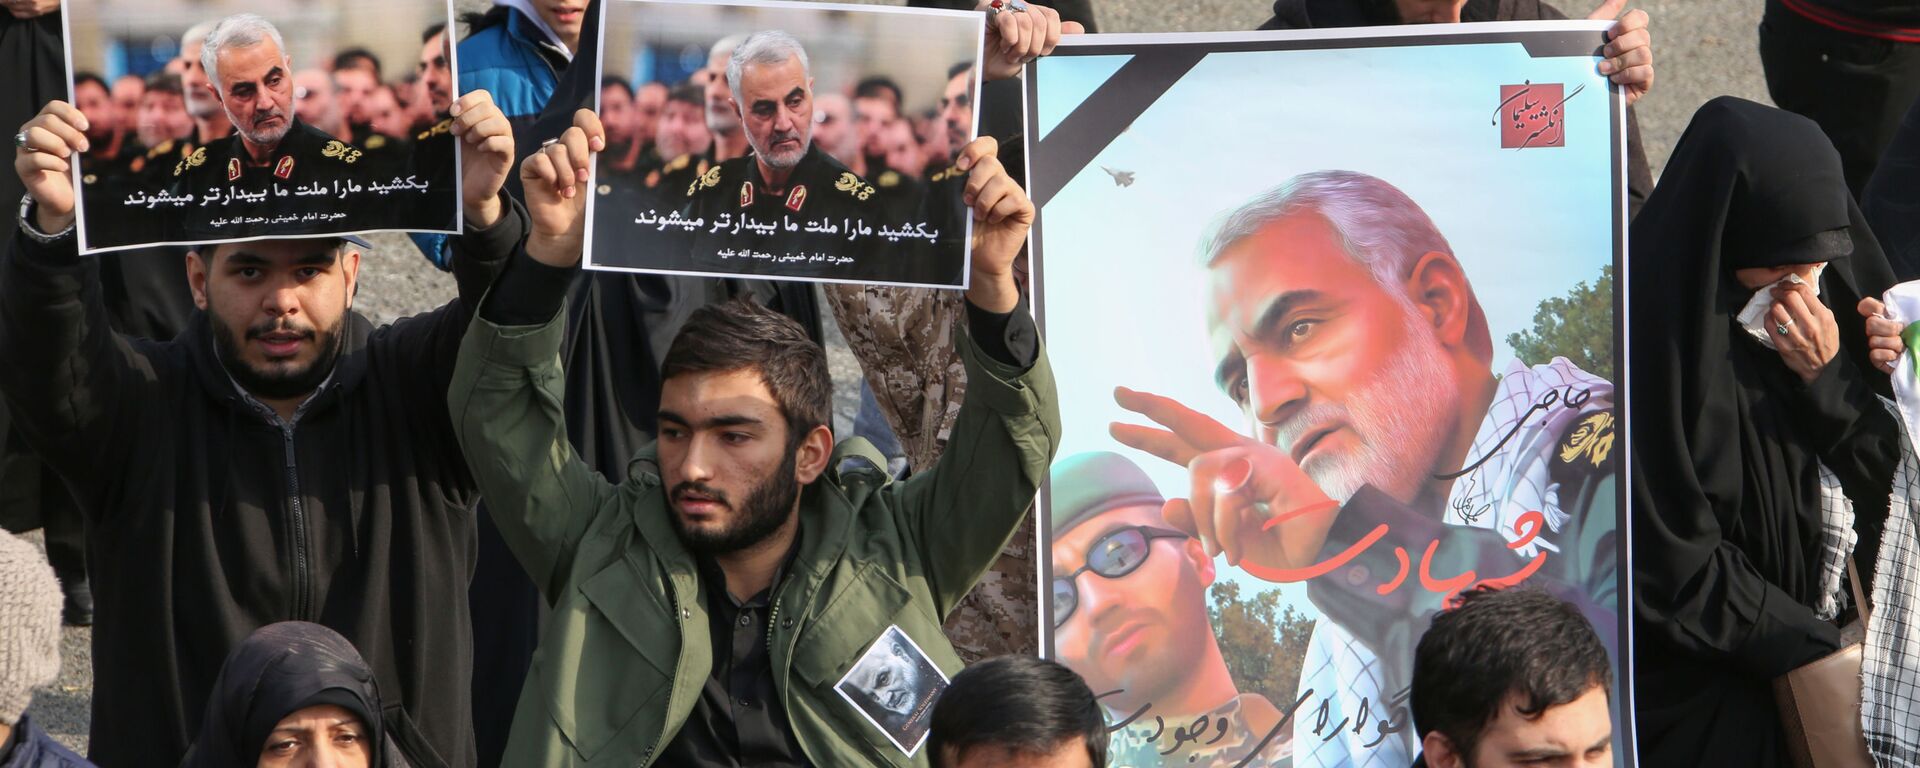 Люди с плакатами с изображением генерала Сулеймани во время демонстрации в Тегеране, Иран, 2020 год - Sputnik Казахстан, 1920, 01.07.2021